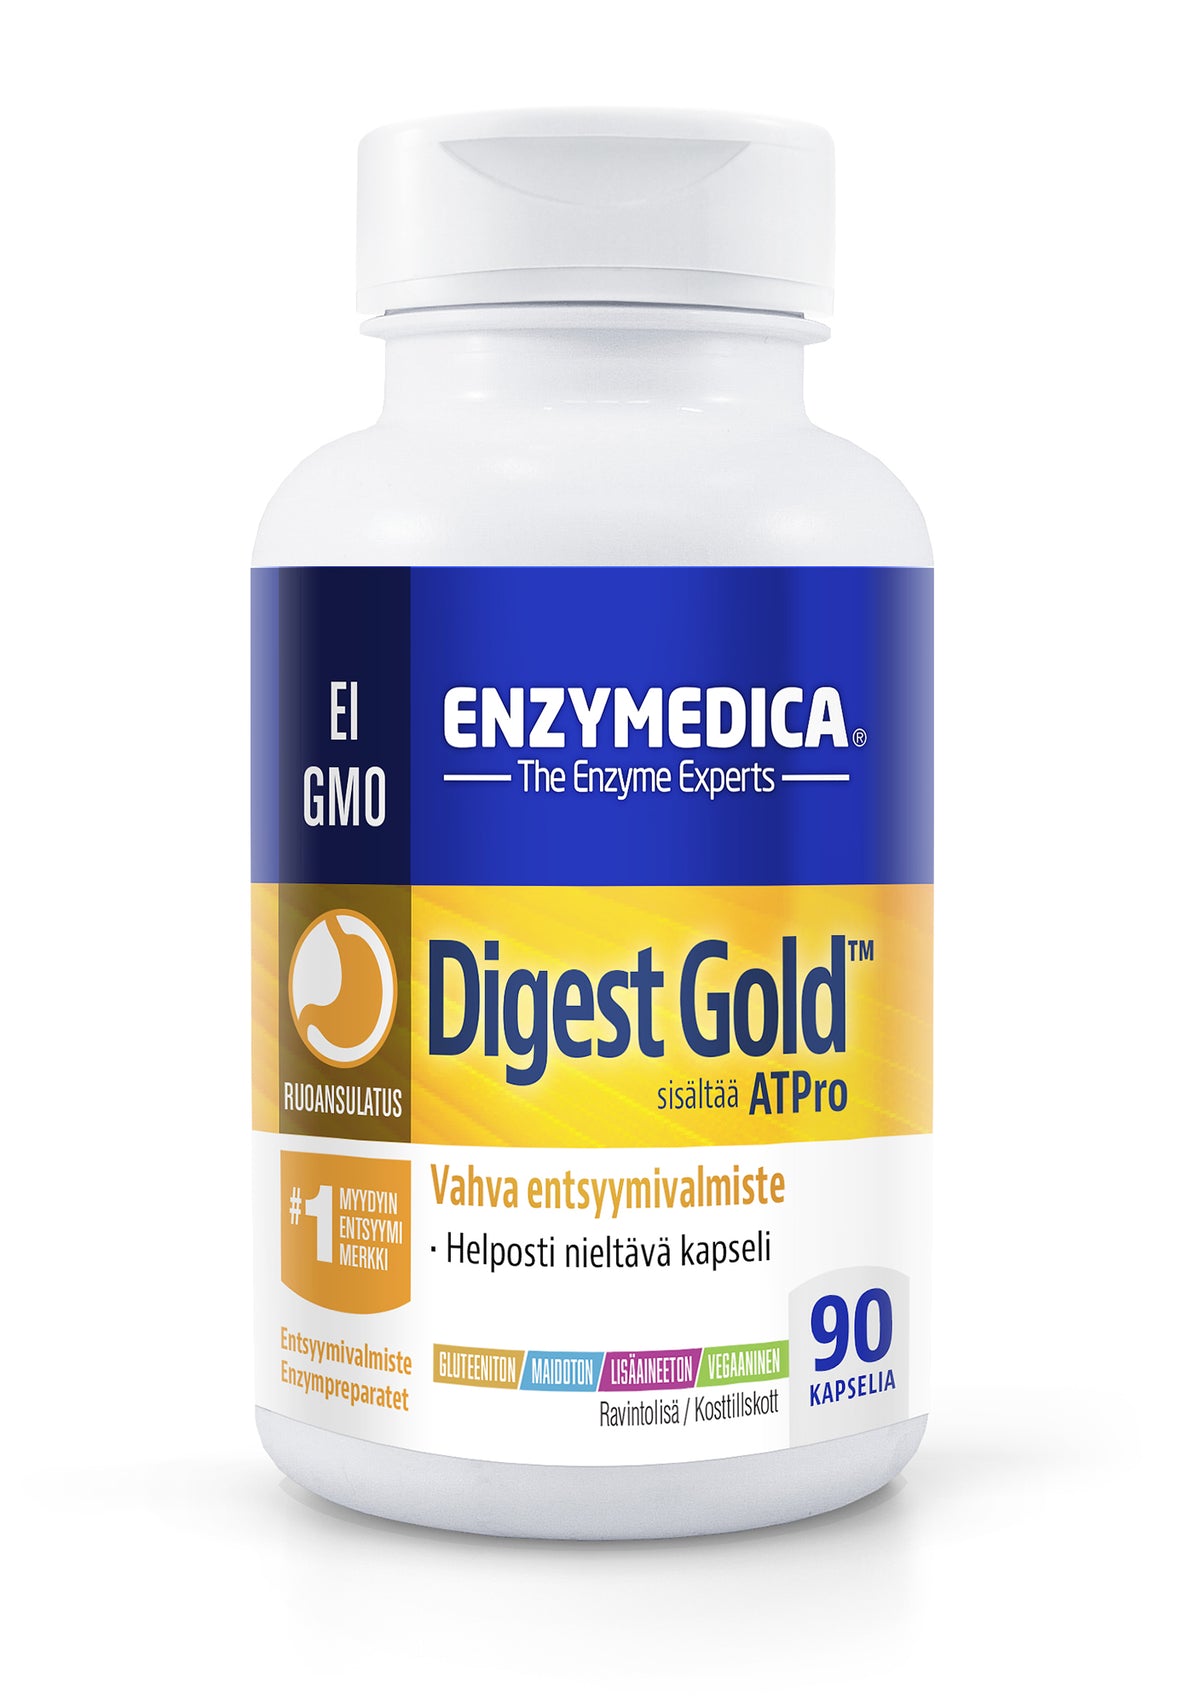 Enzymedica Digest Gold 90 kaps. - Vahva Entsyymivalmiste